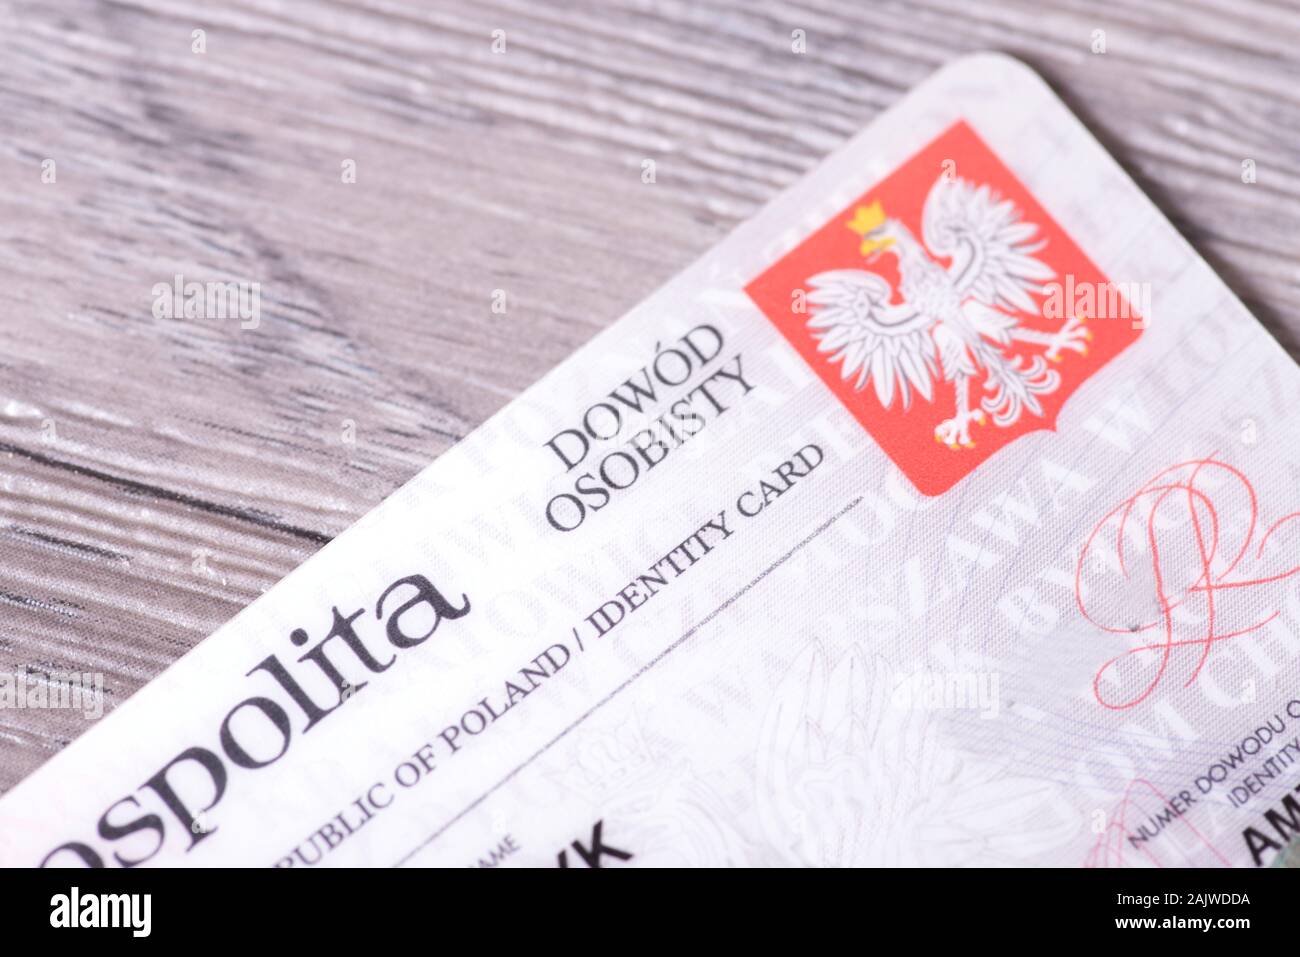 A Polish identity card Stock Photo